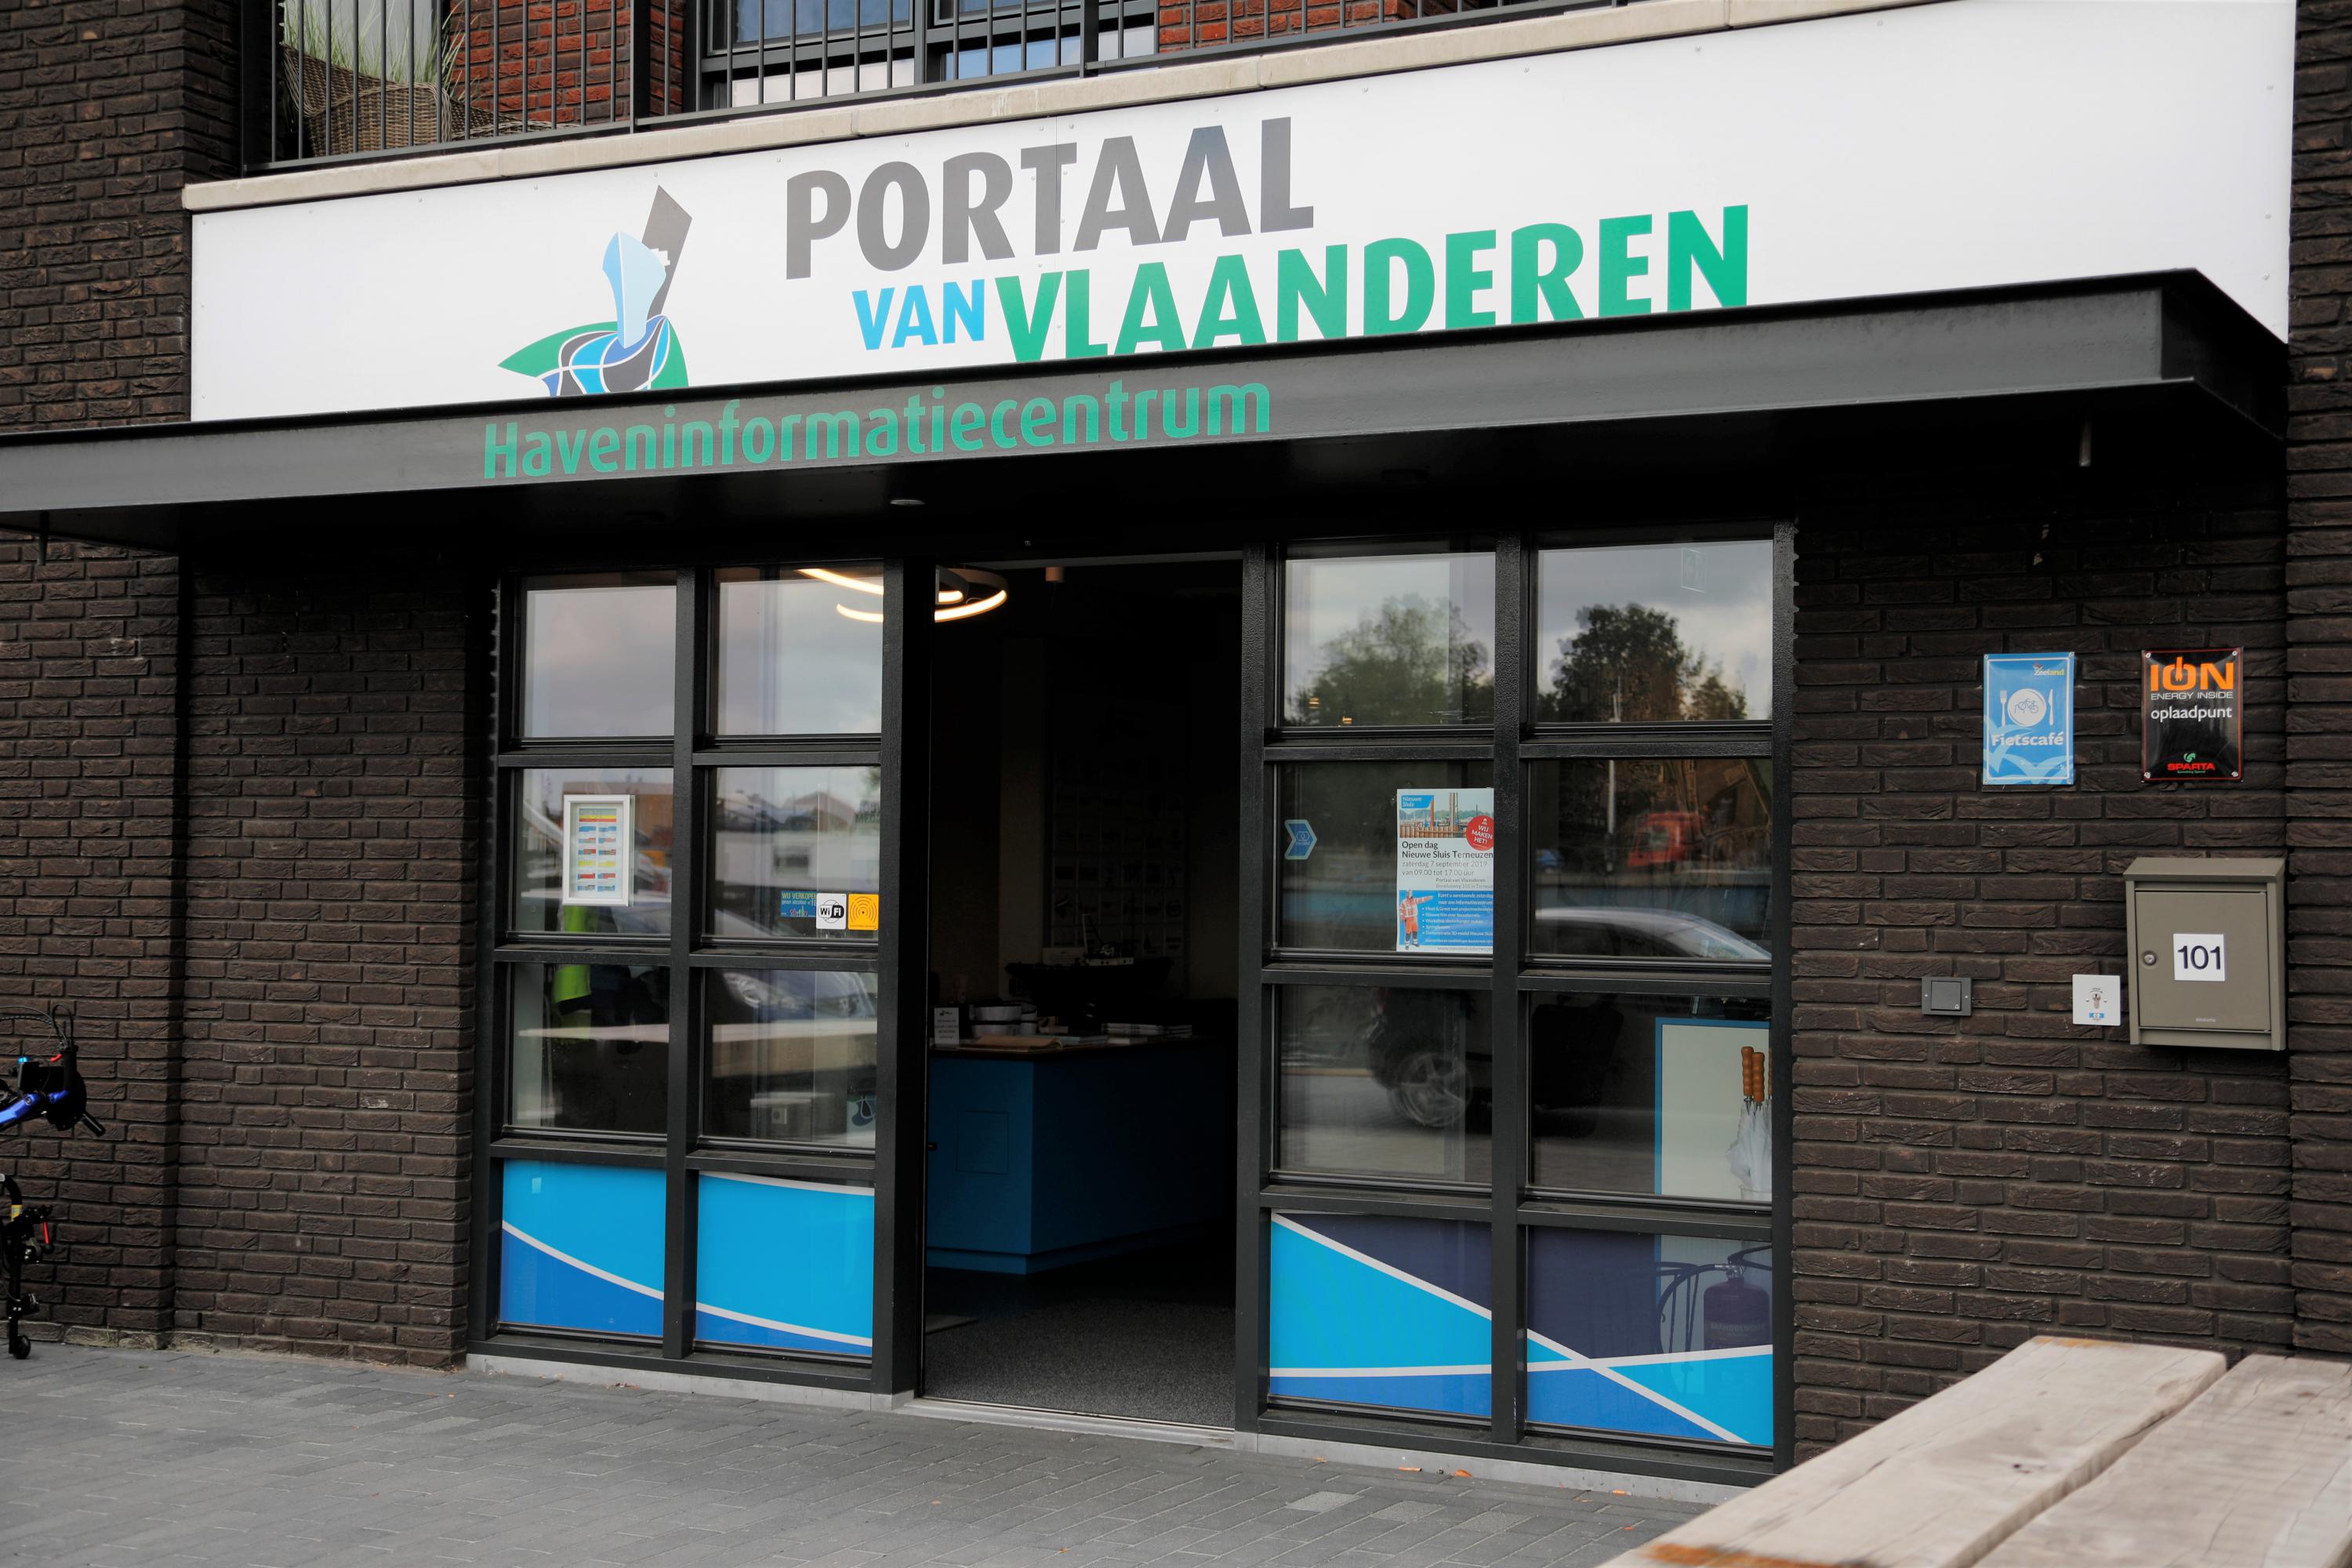 Portaal van Vlaanderen